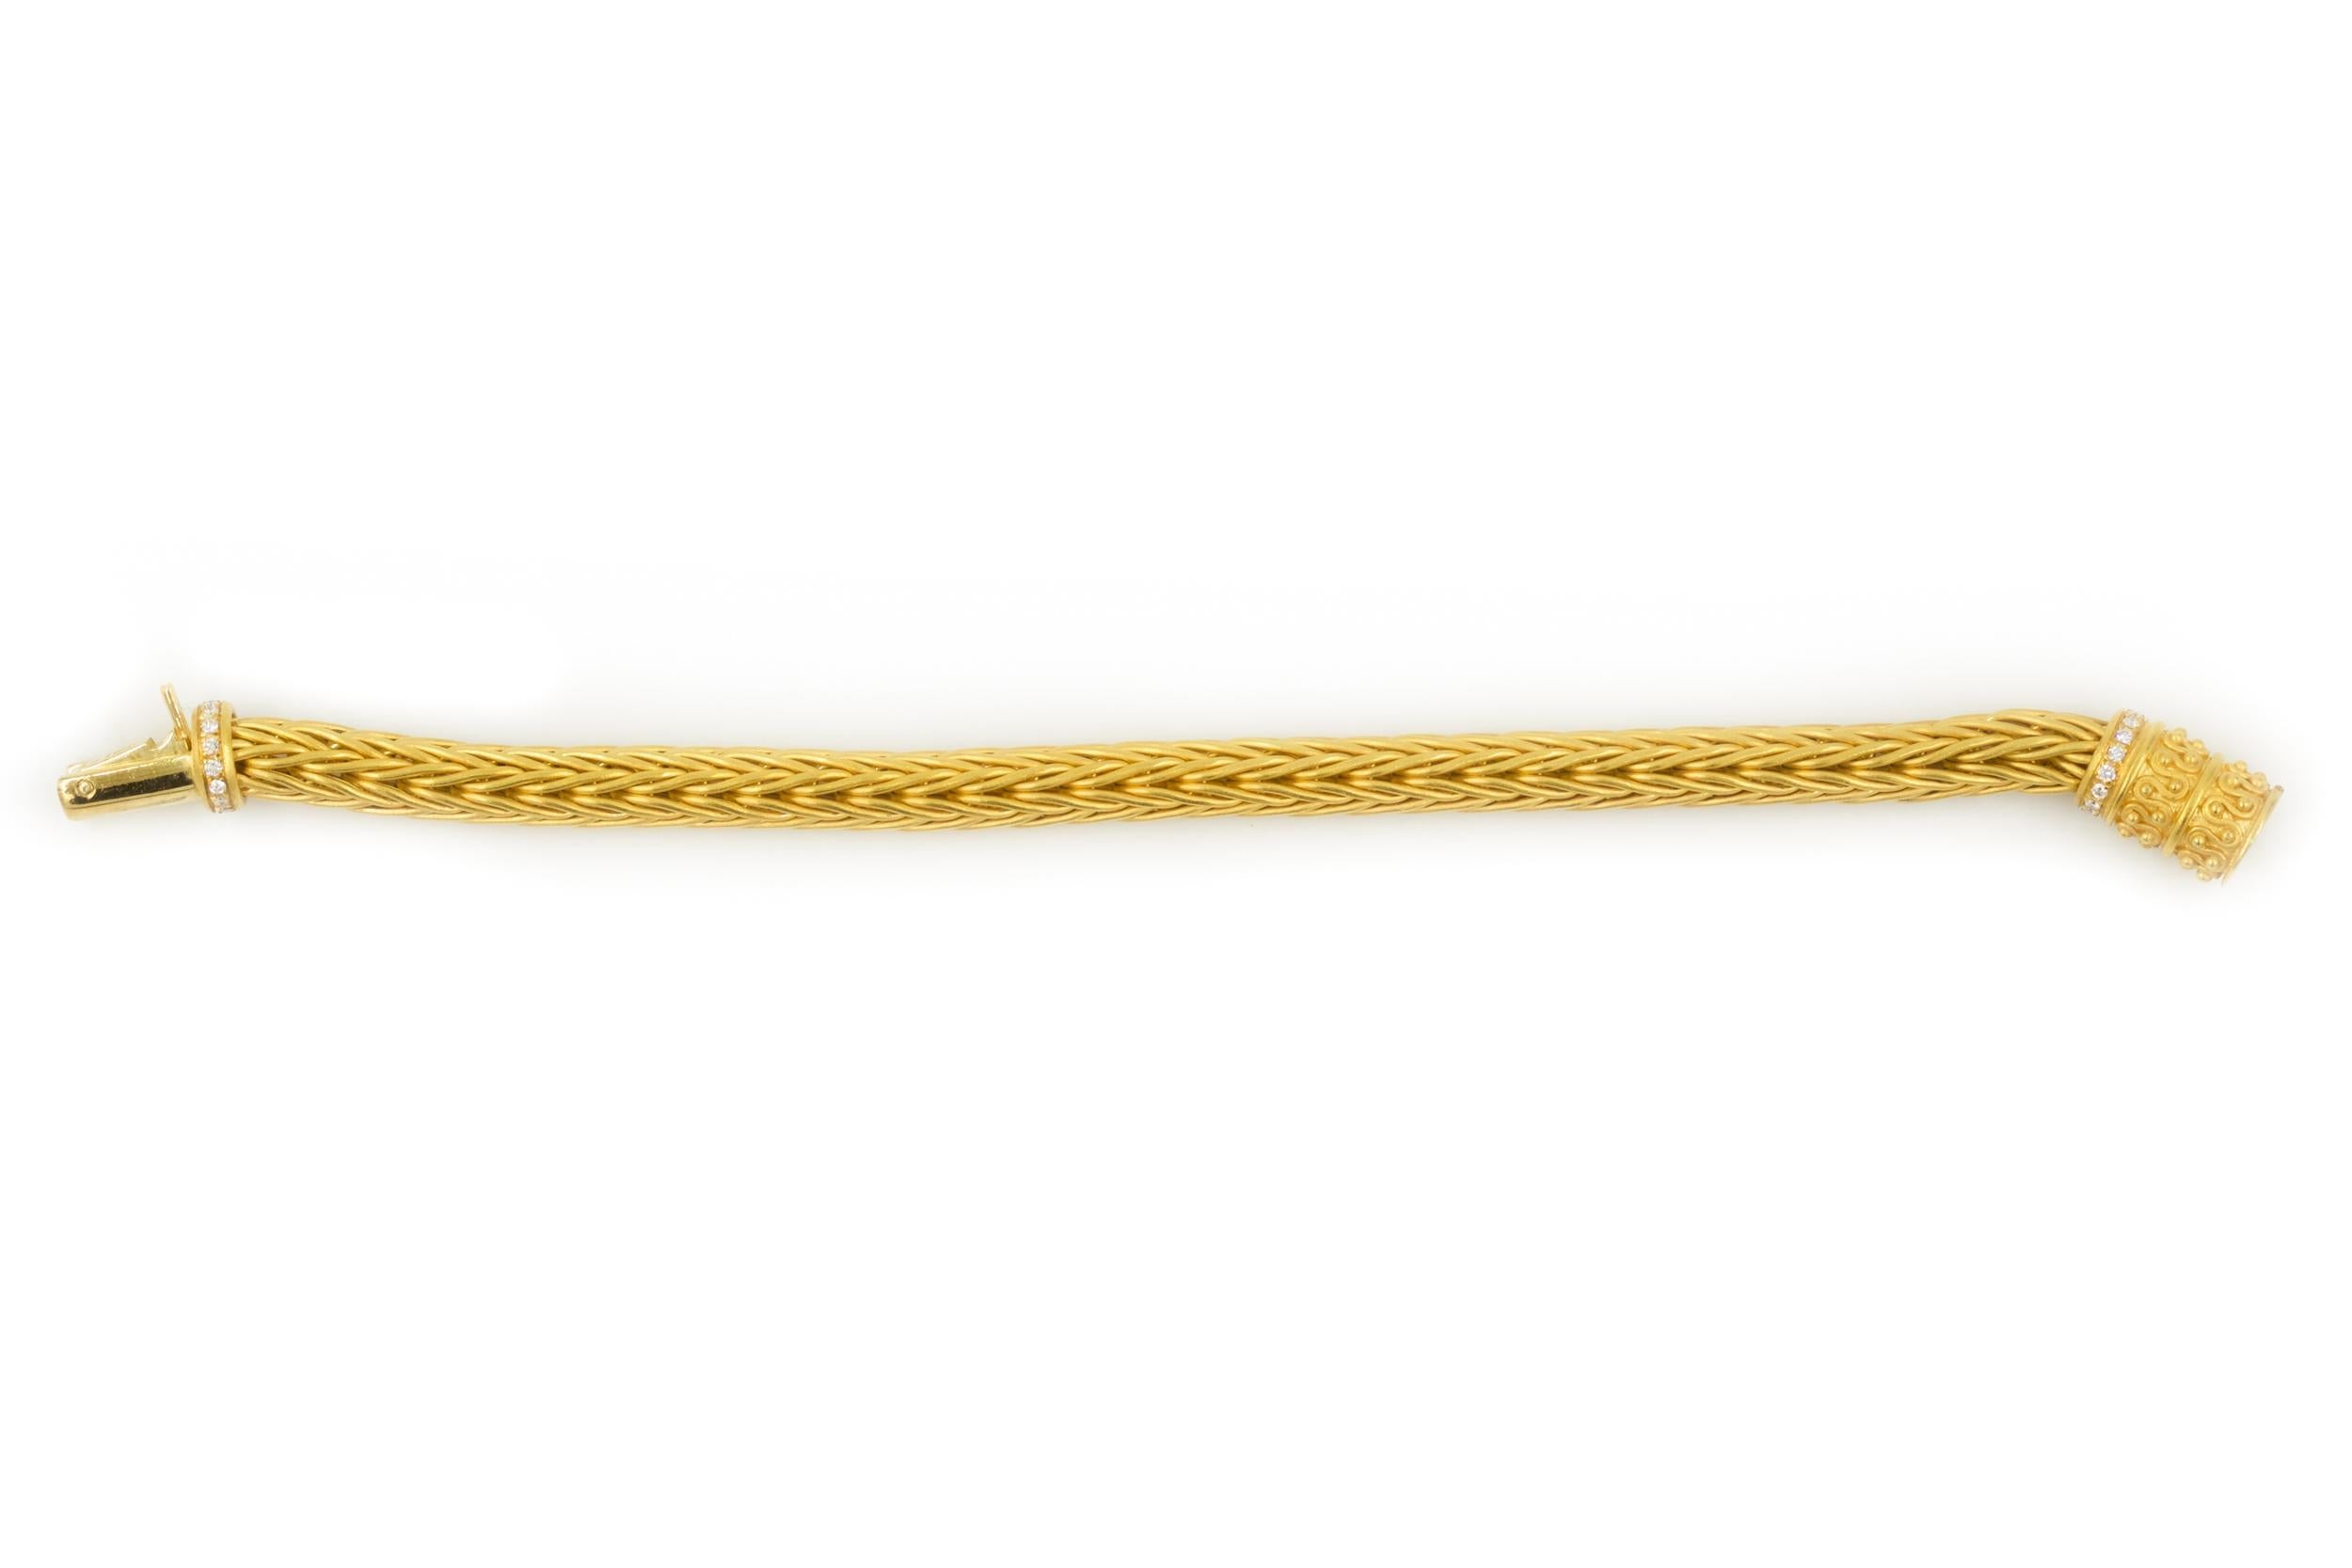 Italian Estate 18k Yellow Gold Woven Wheat Necklace, Bracelet and Earrings by La Pepita